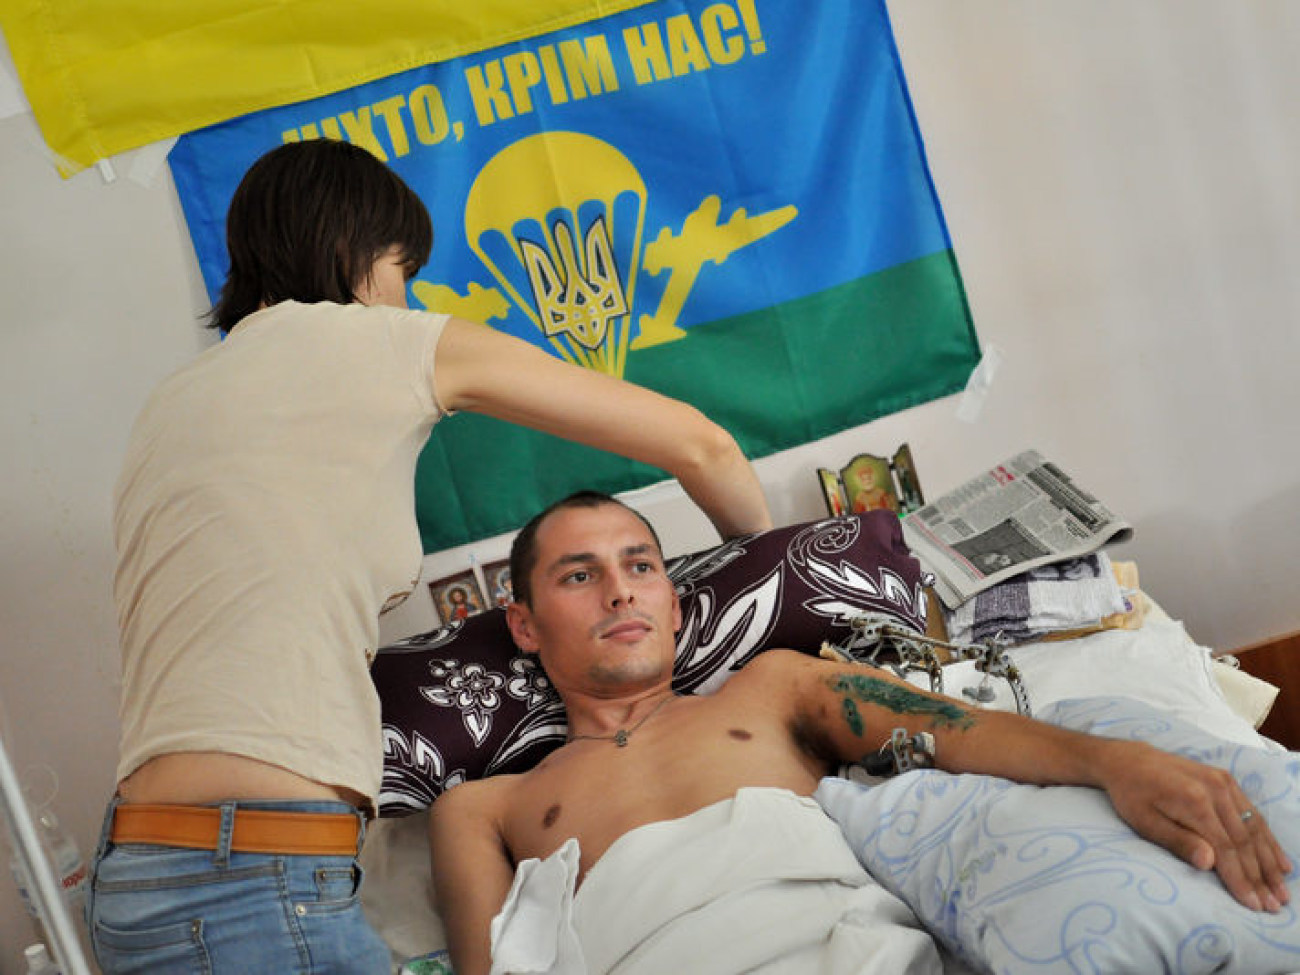 Журналистам показали как лечат воинов АТО, 22 июля 2014г.